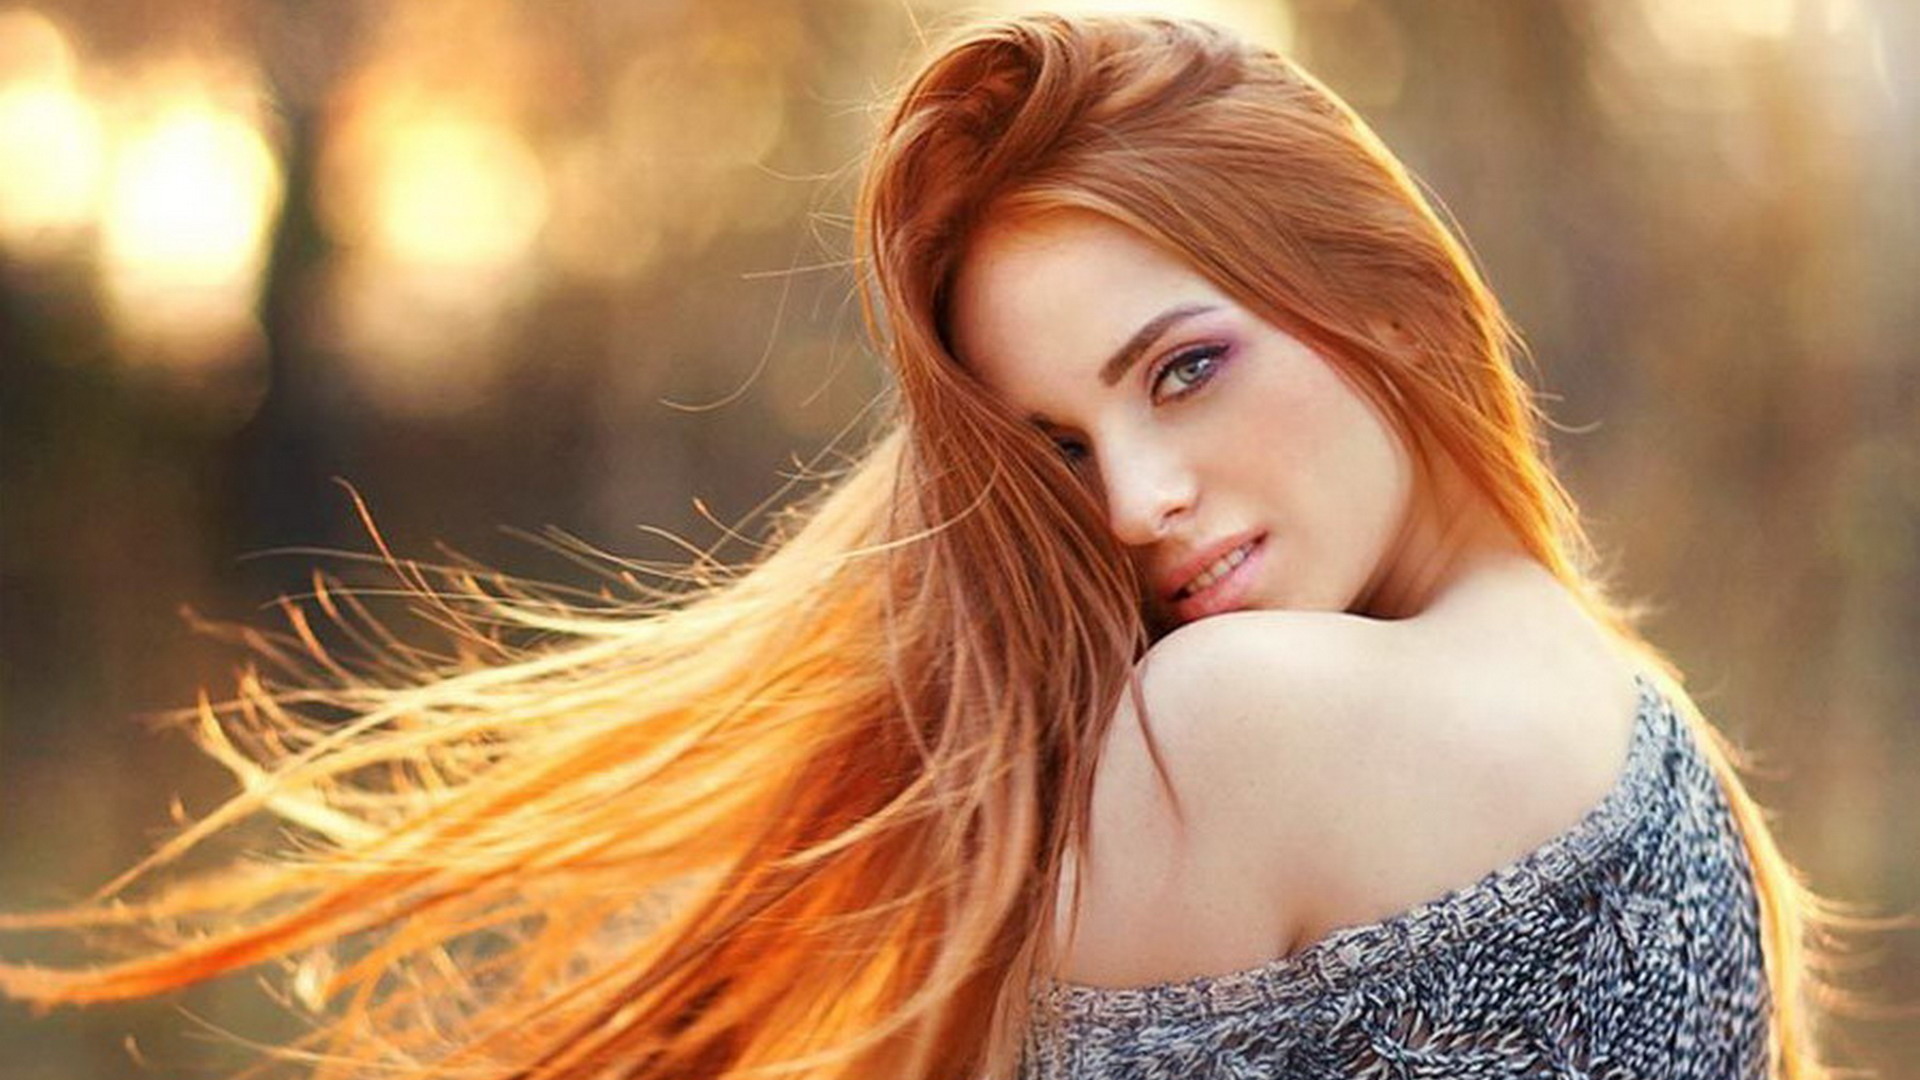 Любительские фото девушек с рыжими волосами на пизде